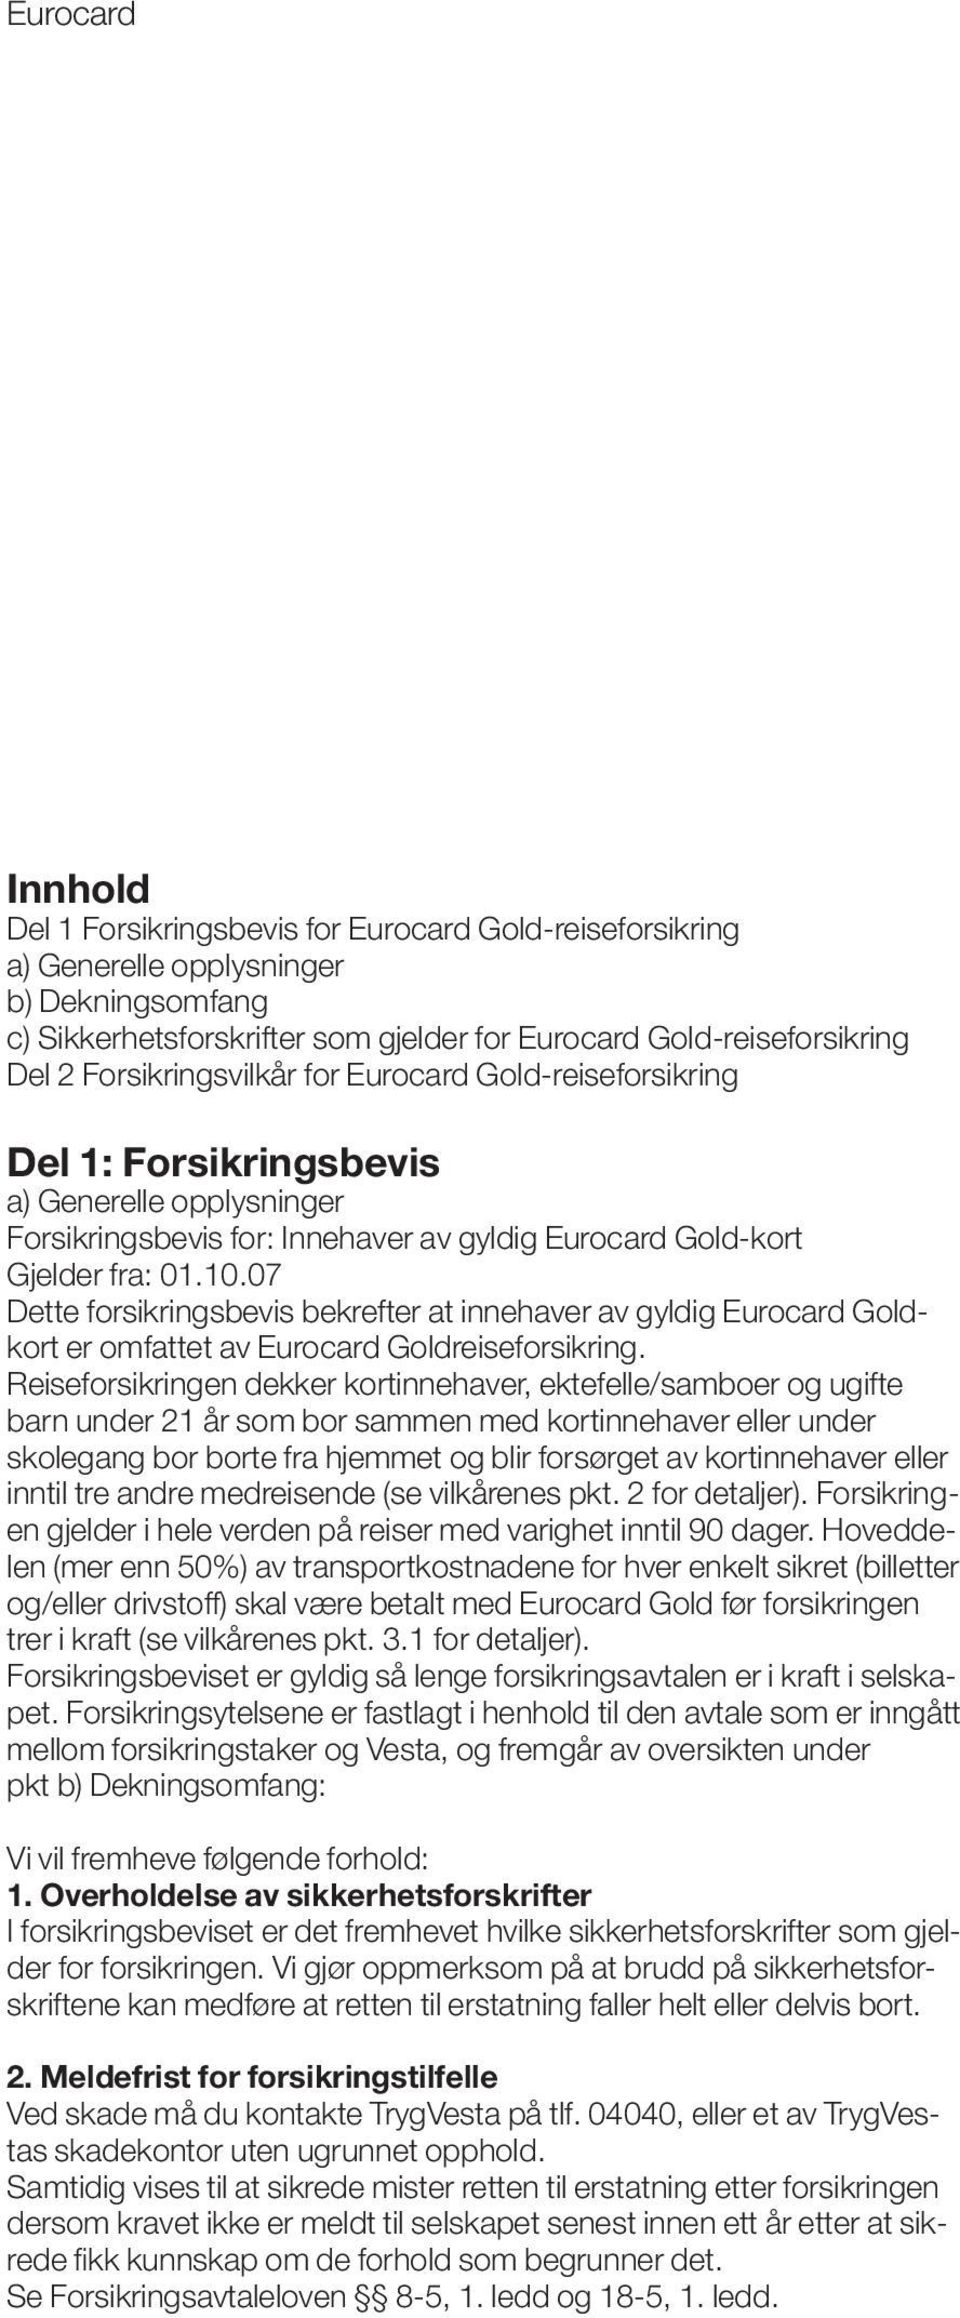 07 Dette forsikringsbevis bekrefter at innehaver av gyldig Eurocard Goldkort er omfattet av Eurocard Goldreiseforsikring.